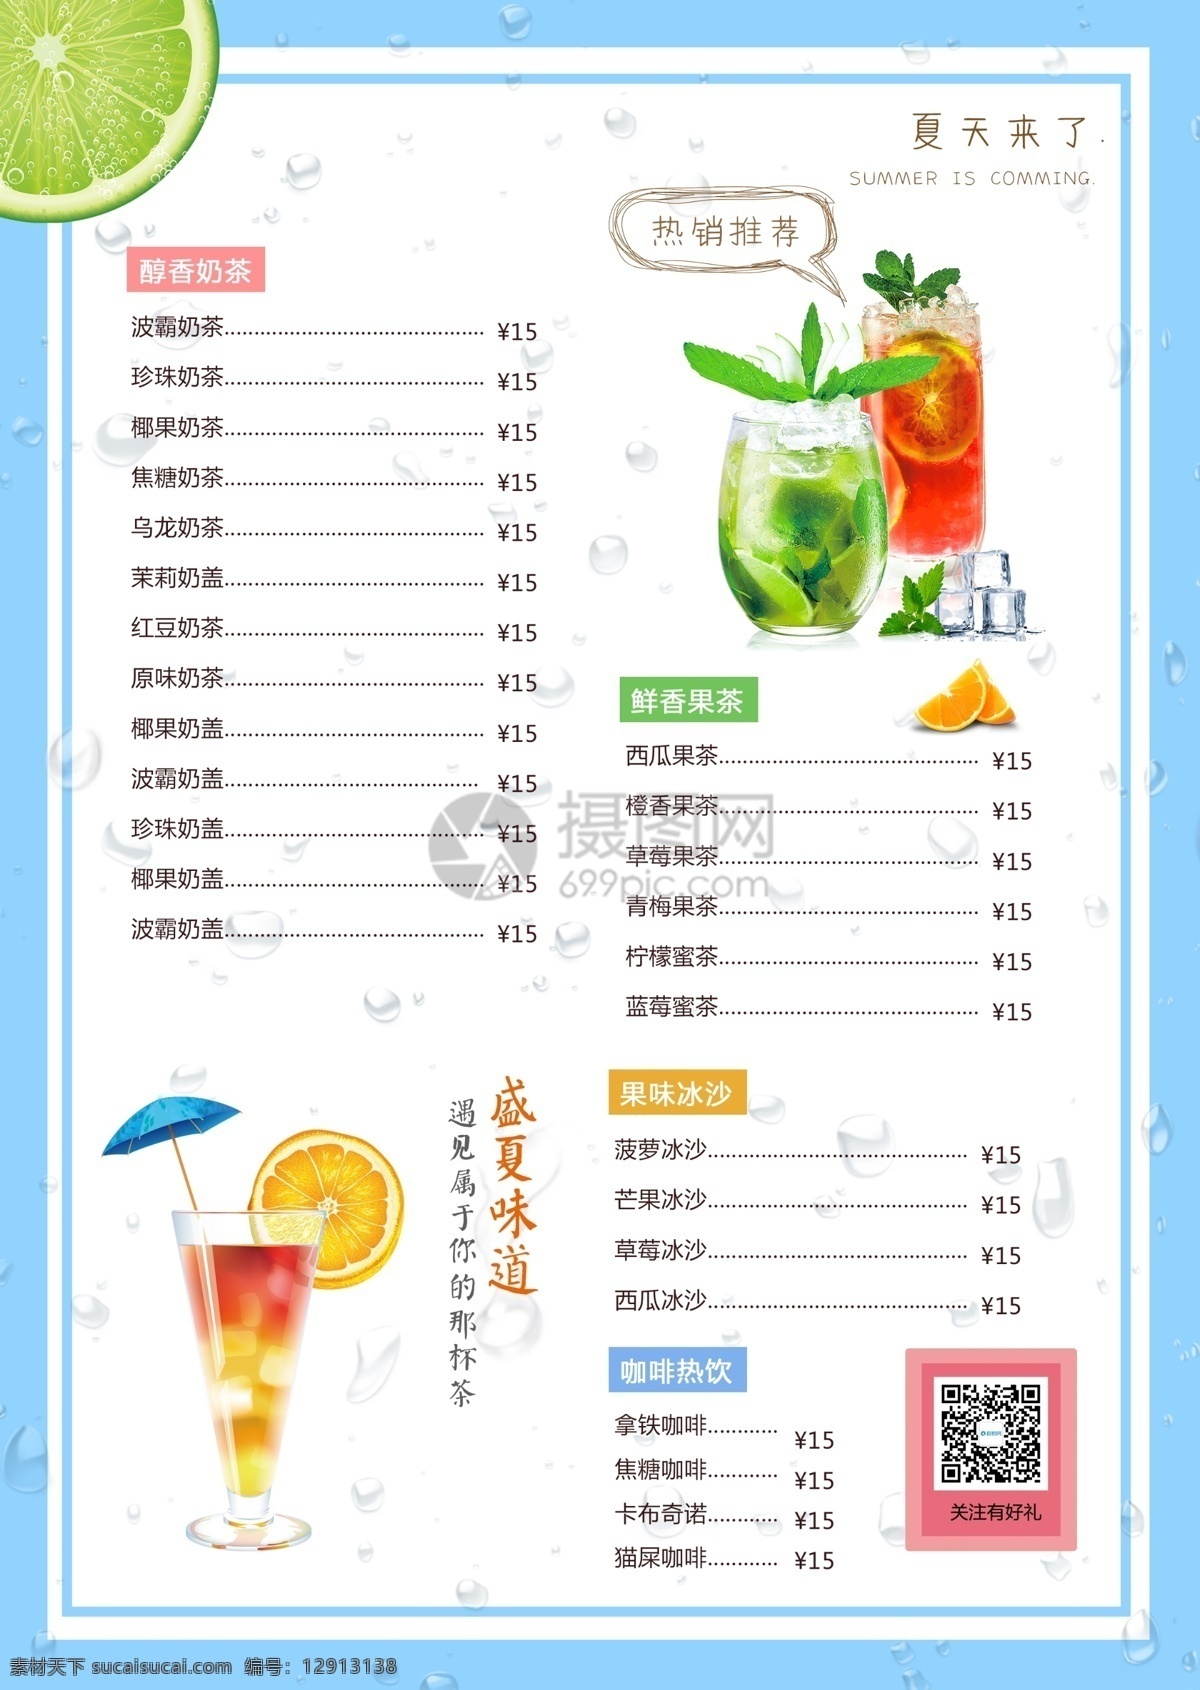 夏日 饮品 宣传单 夏日饮品 奶茶点传单 水果茶 柠檬茶 冰饮 传单设计 饮料传单